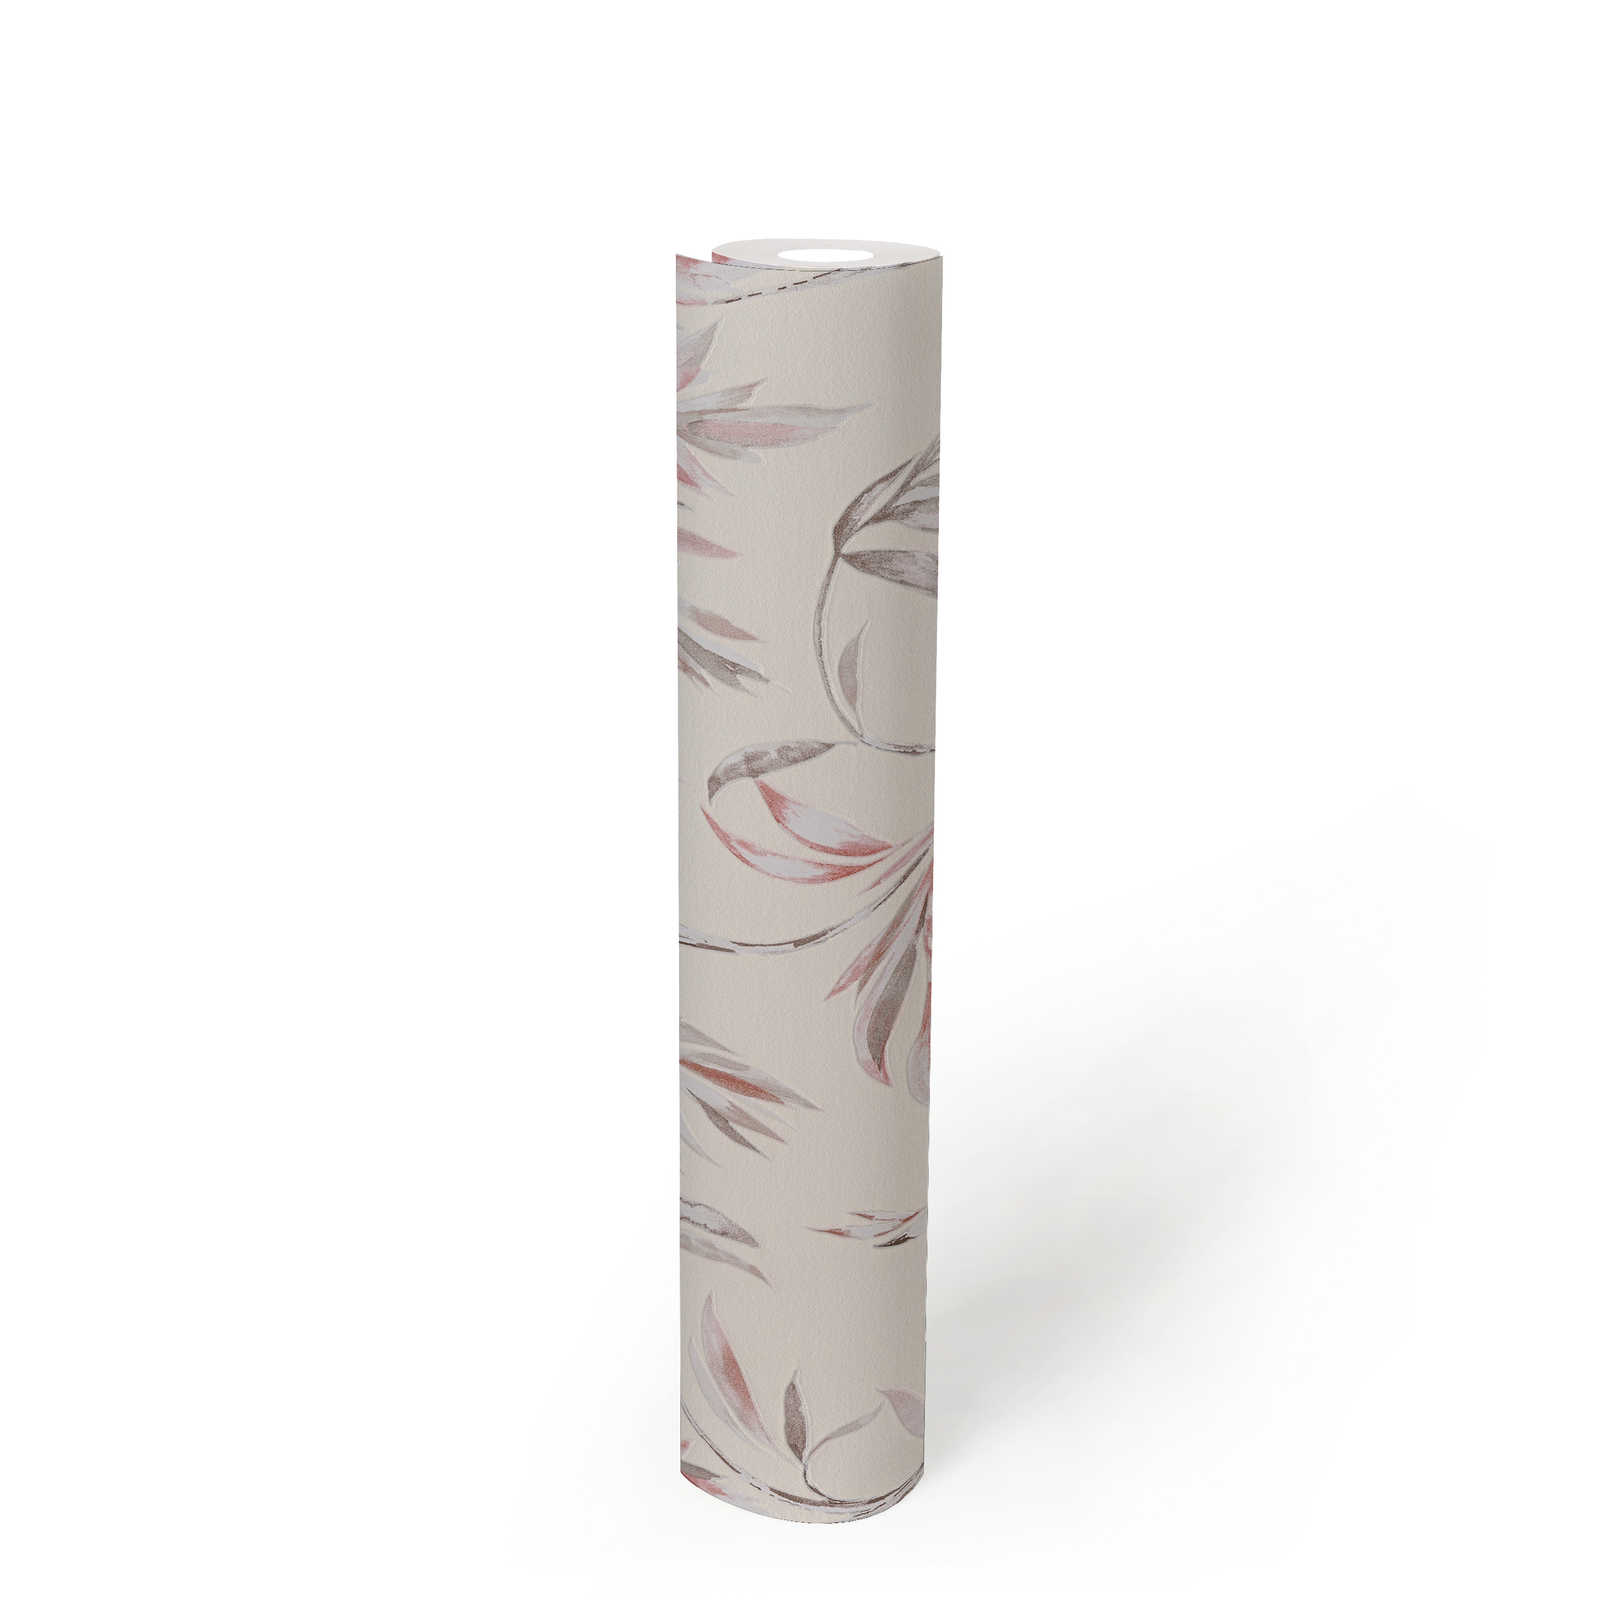             Feuilles et rinceaux papier peint intissé design naturel - beige, rose
        